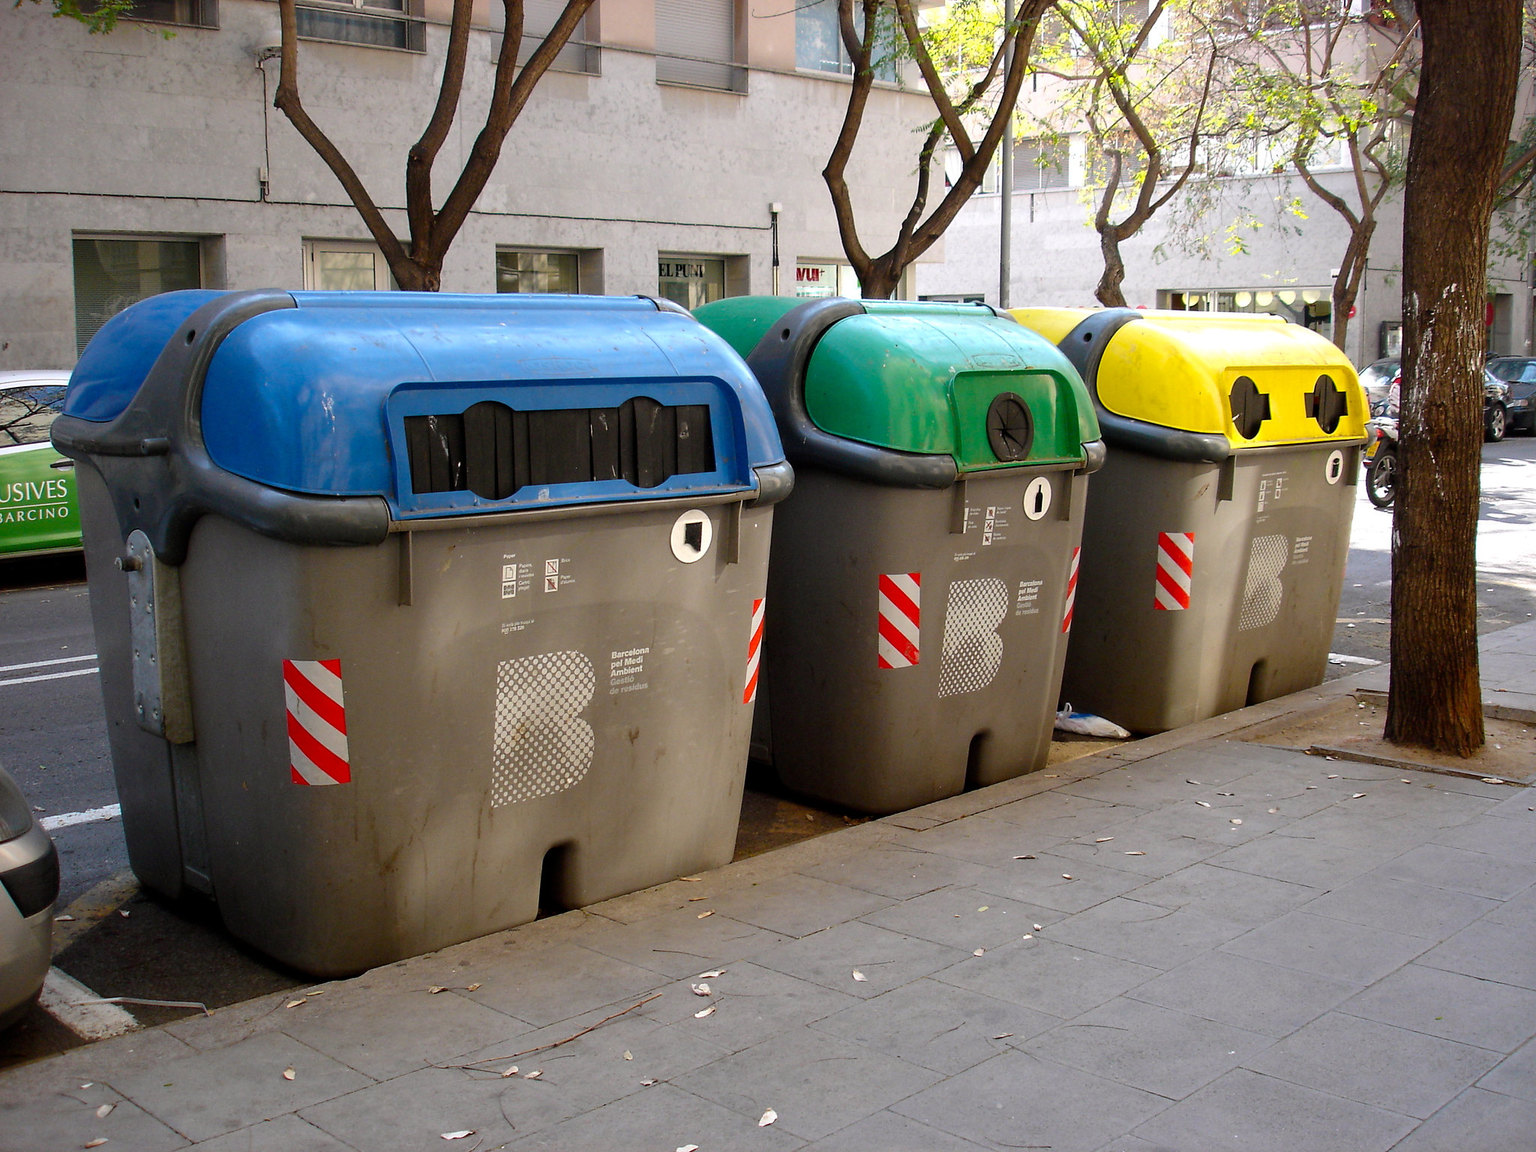 Aprobada la nueva tasa de recogida de residuos de Barcelona, que contó con el apoyo técnico de ENT